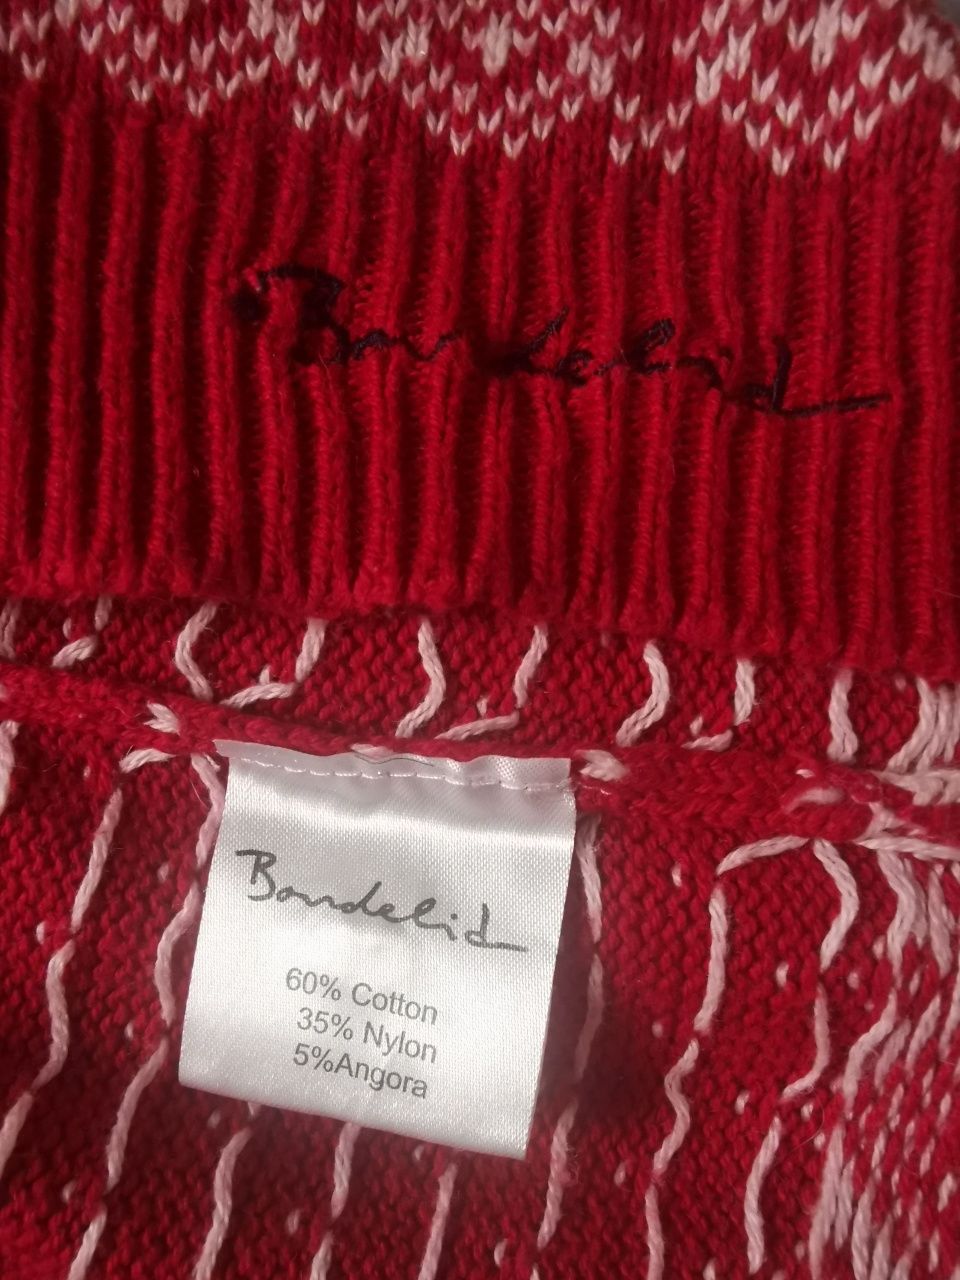 zimowy czerwony sweter marki Bondelid na narty, w góry, zima